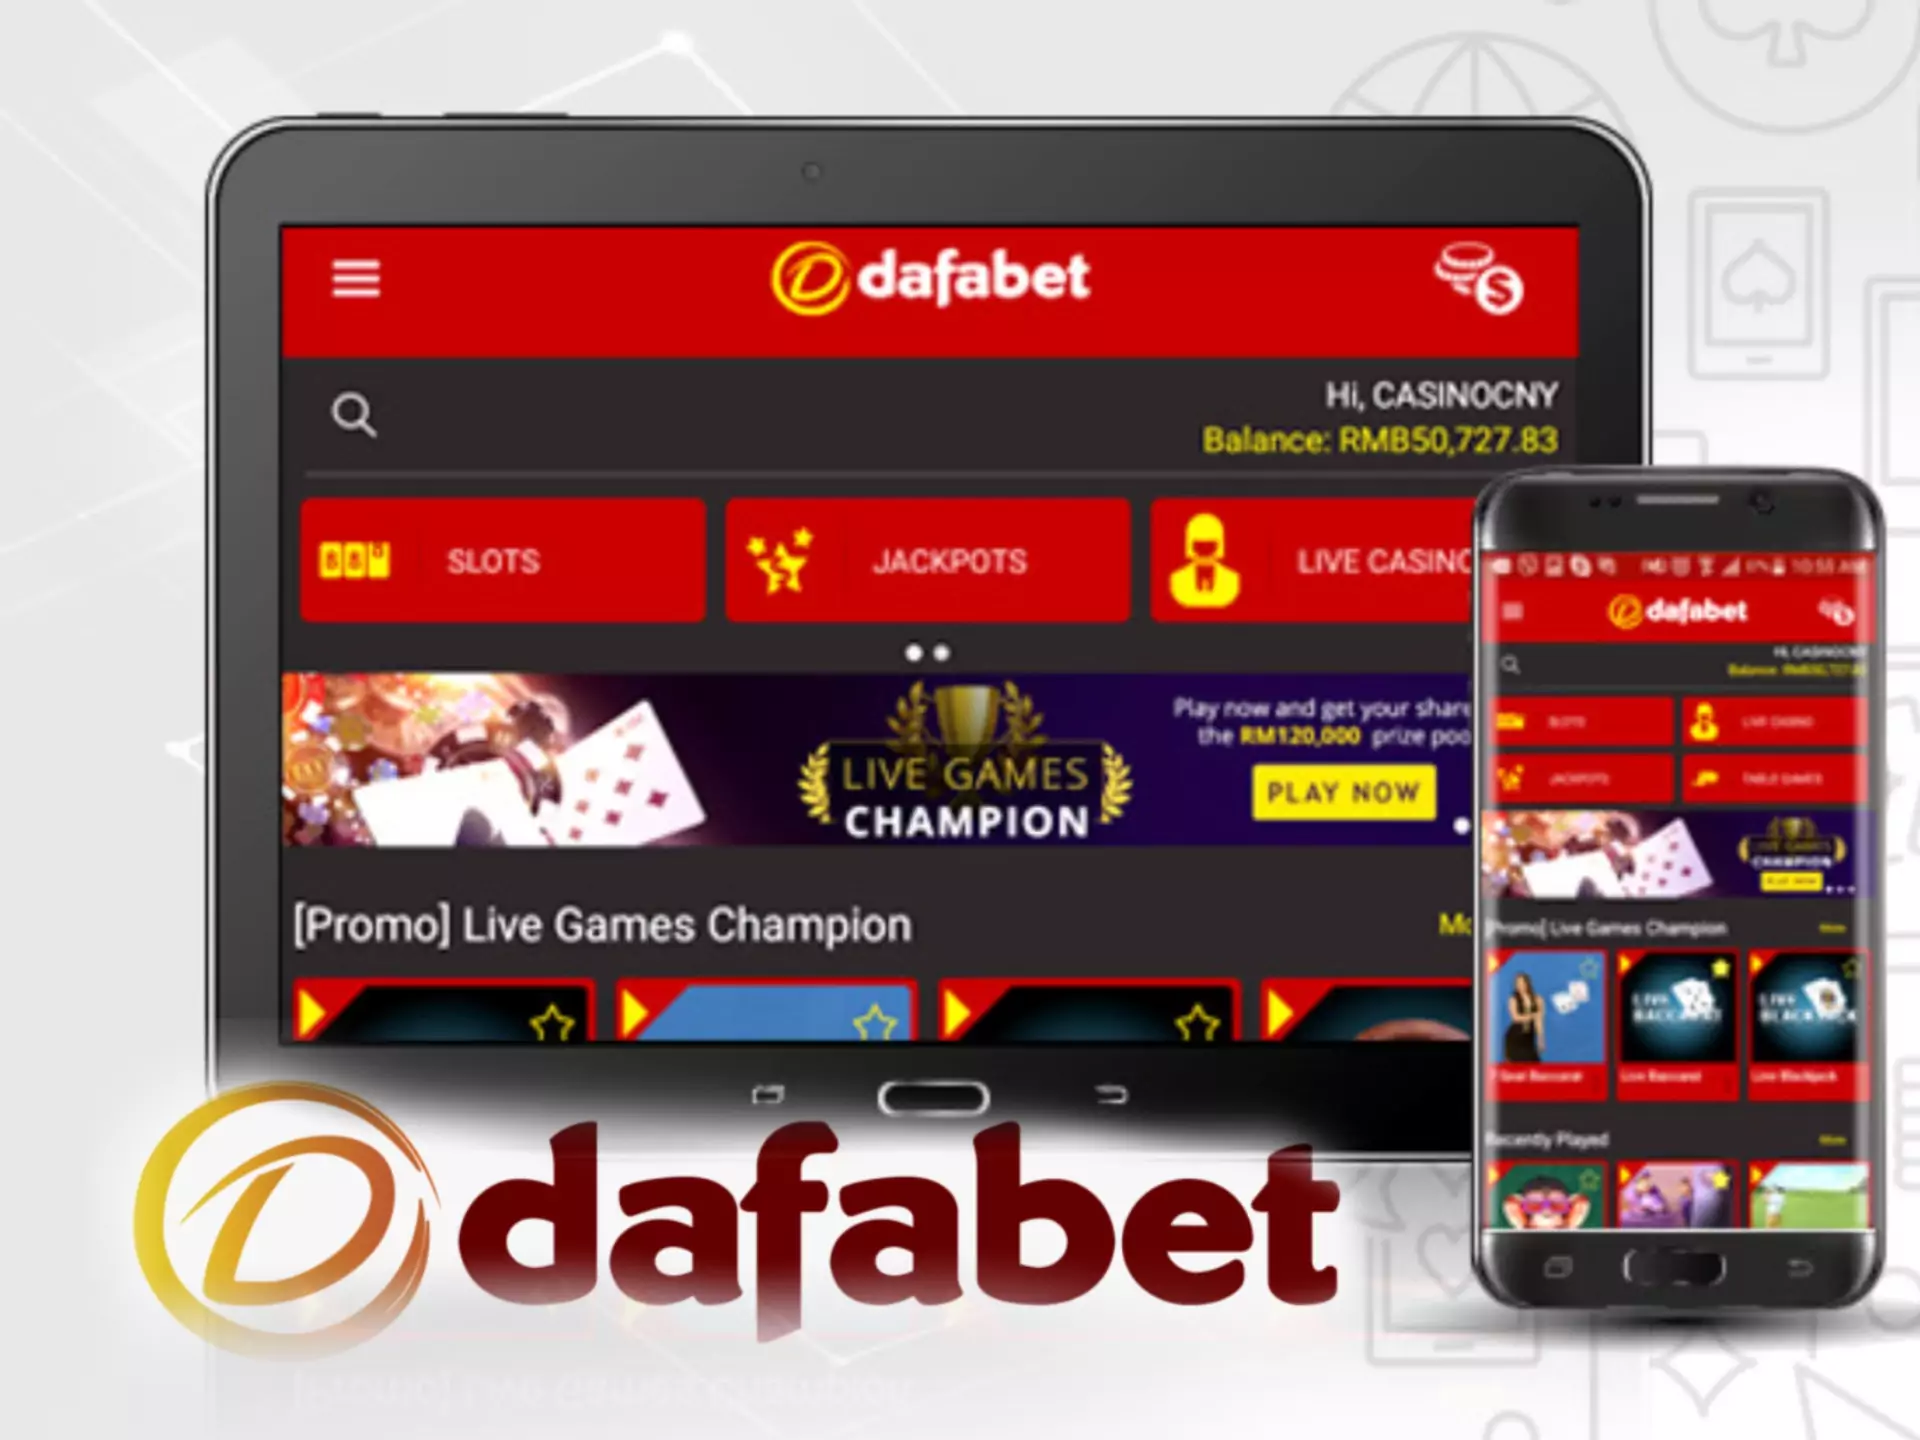 Dafabet ऐप दांव लगाने और कैसीनो गेम खेलने का सबसे सुविधाजनक तरीका है।